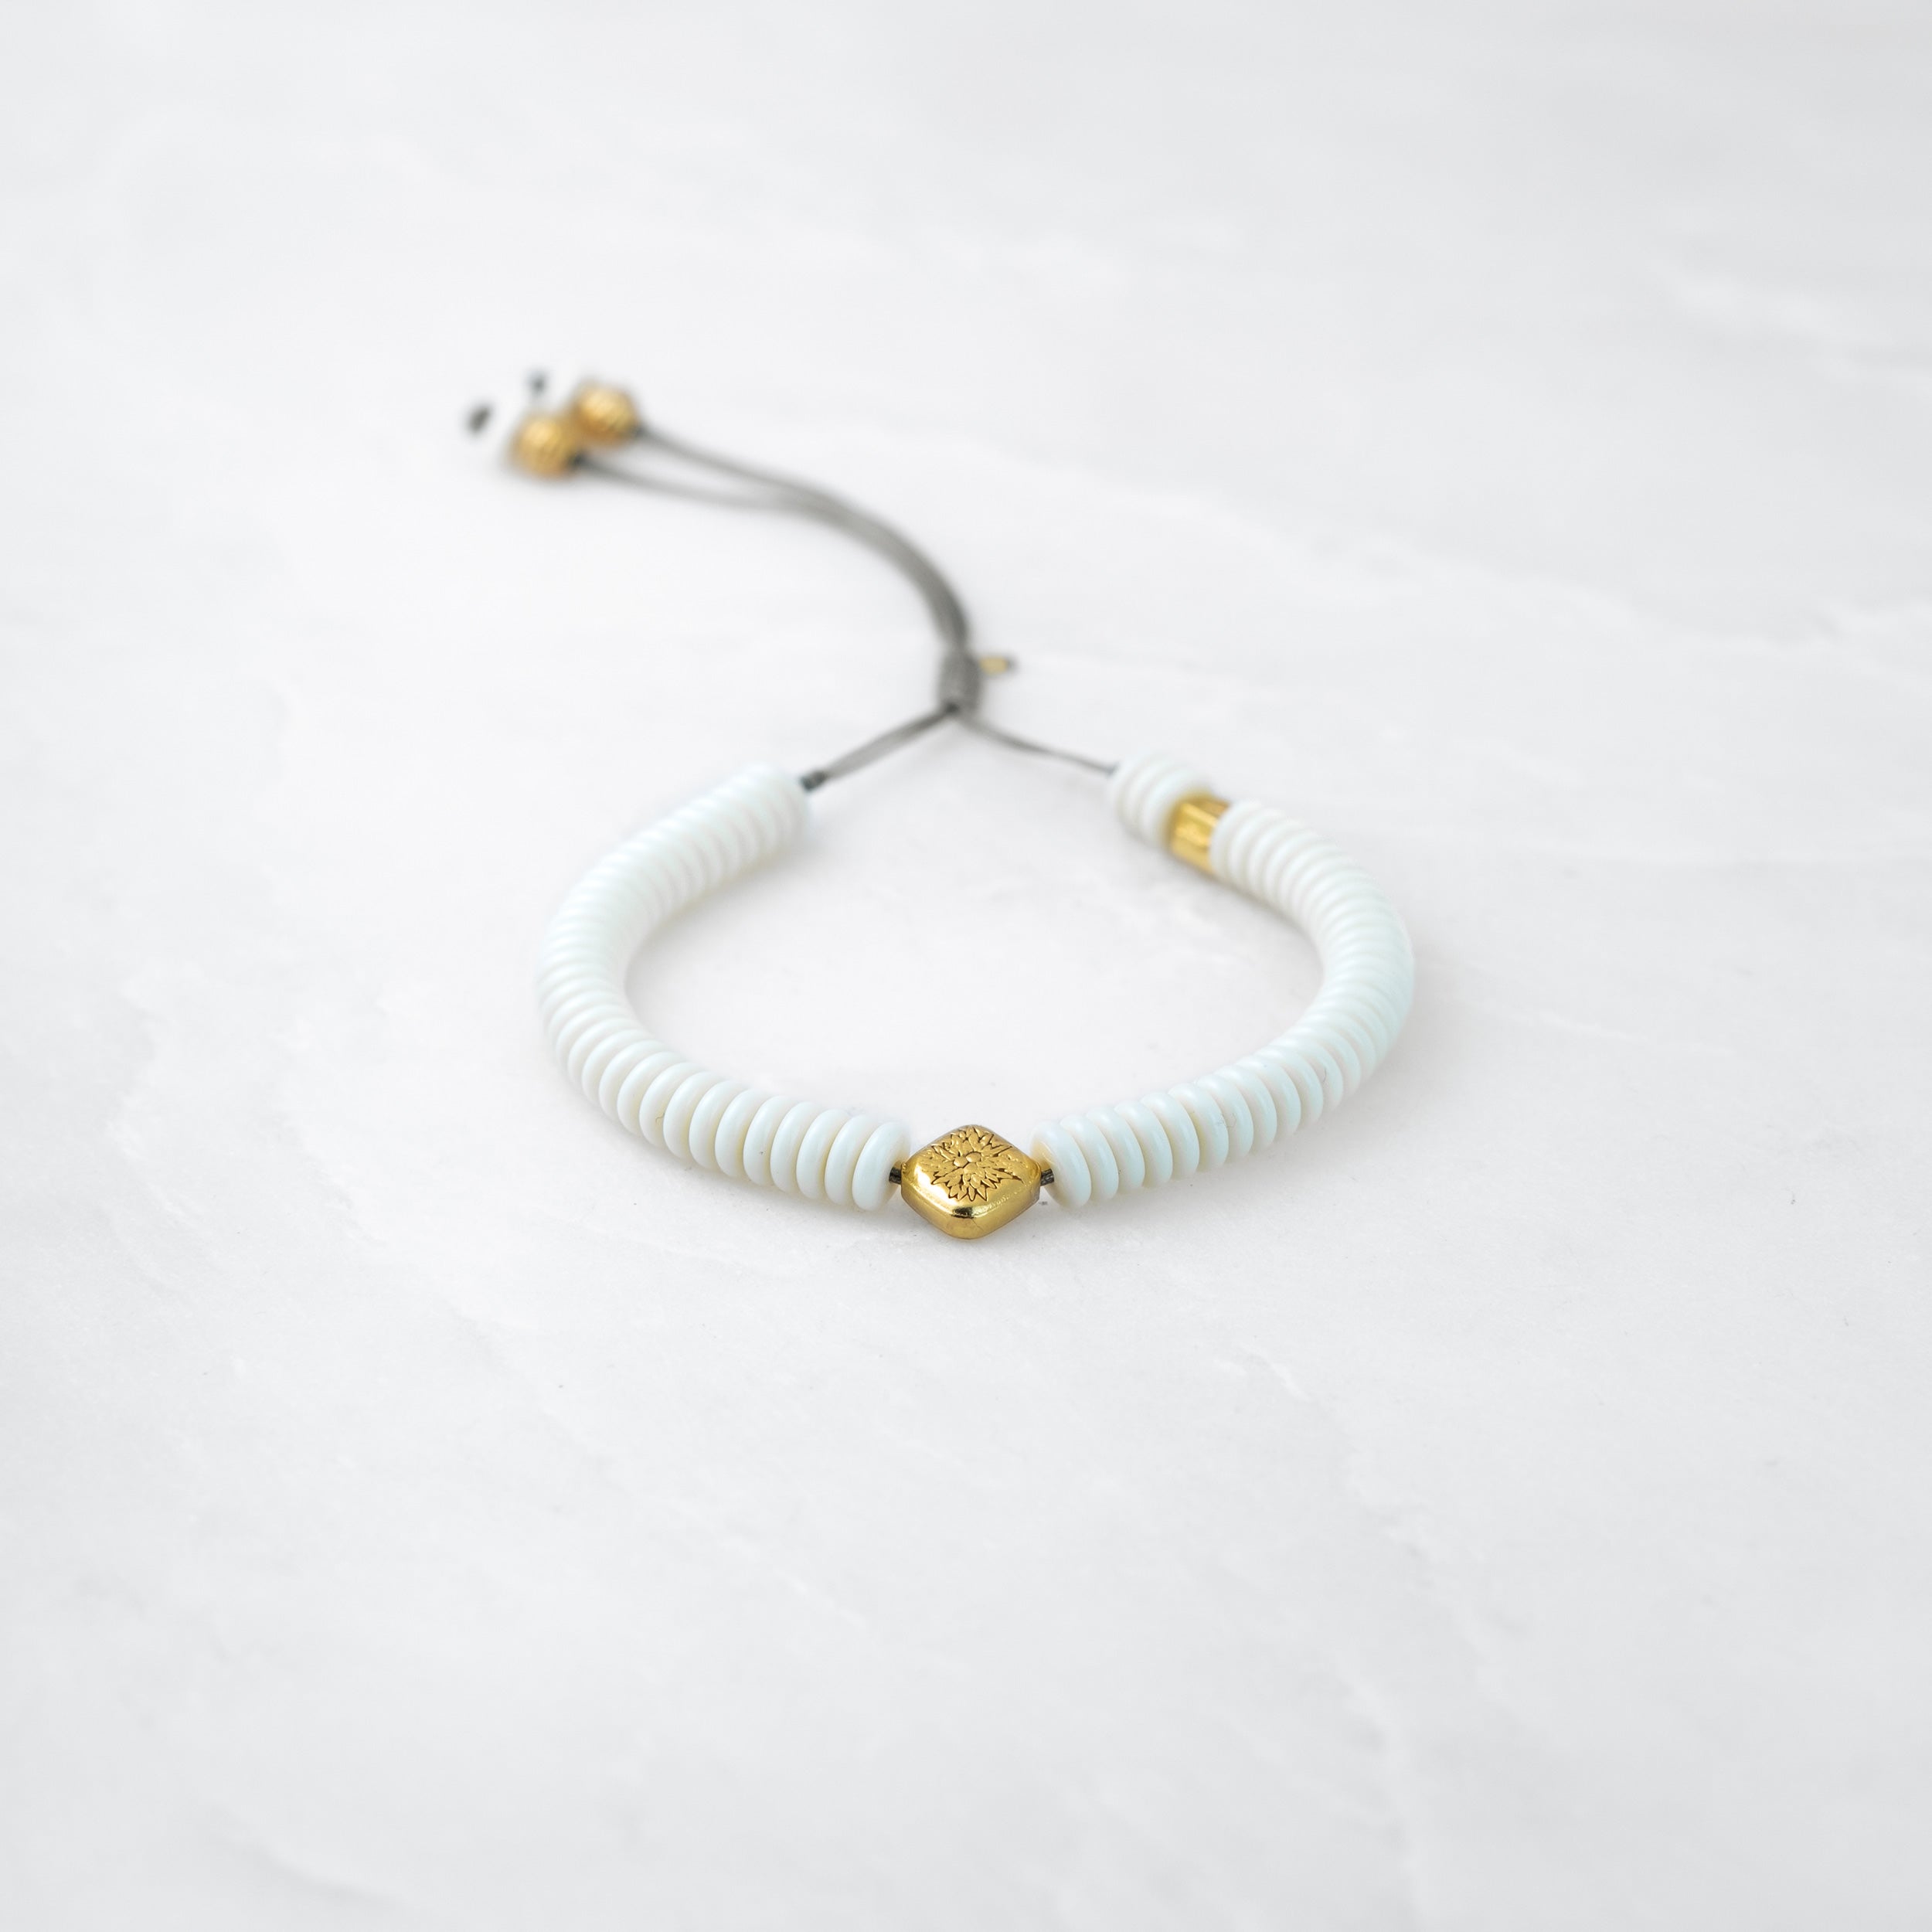 MOSO bracelet - Amala, gold